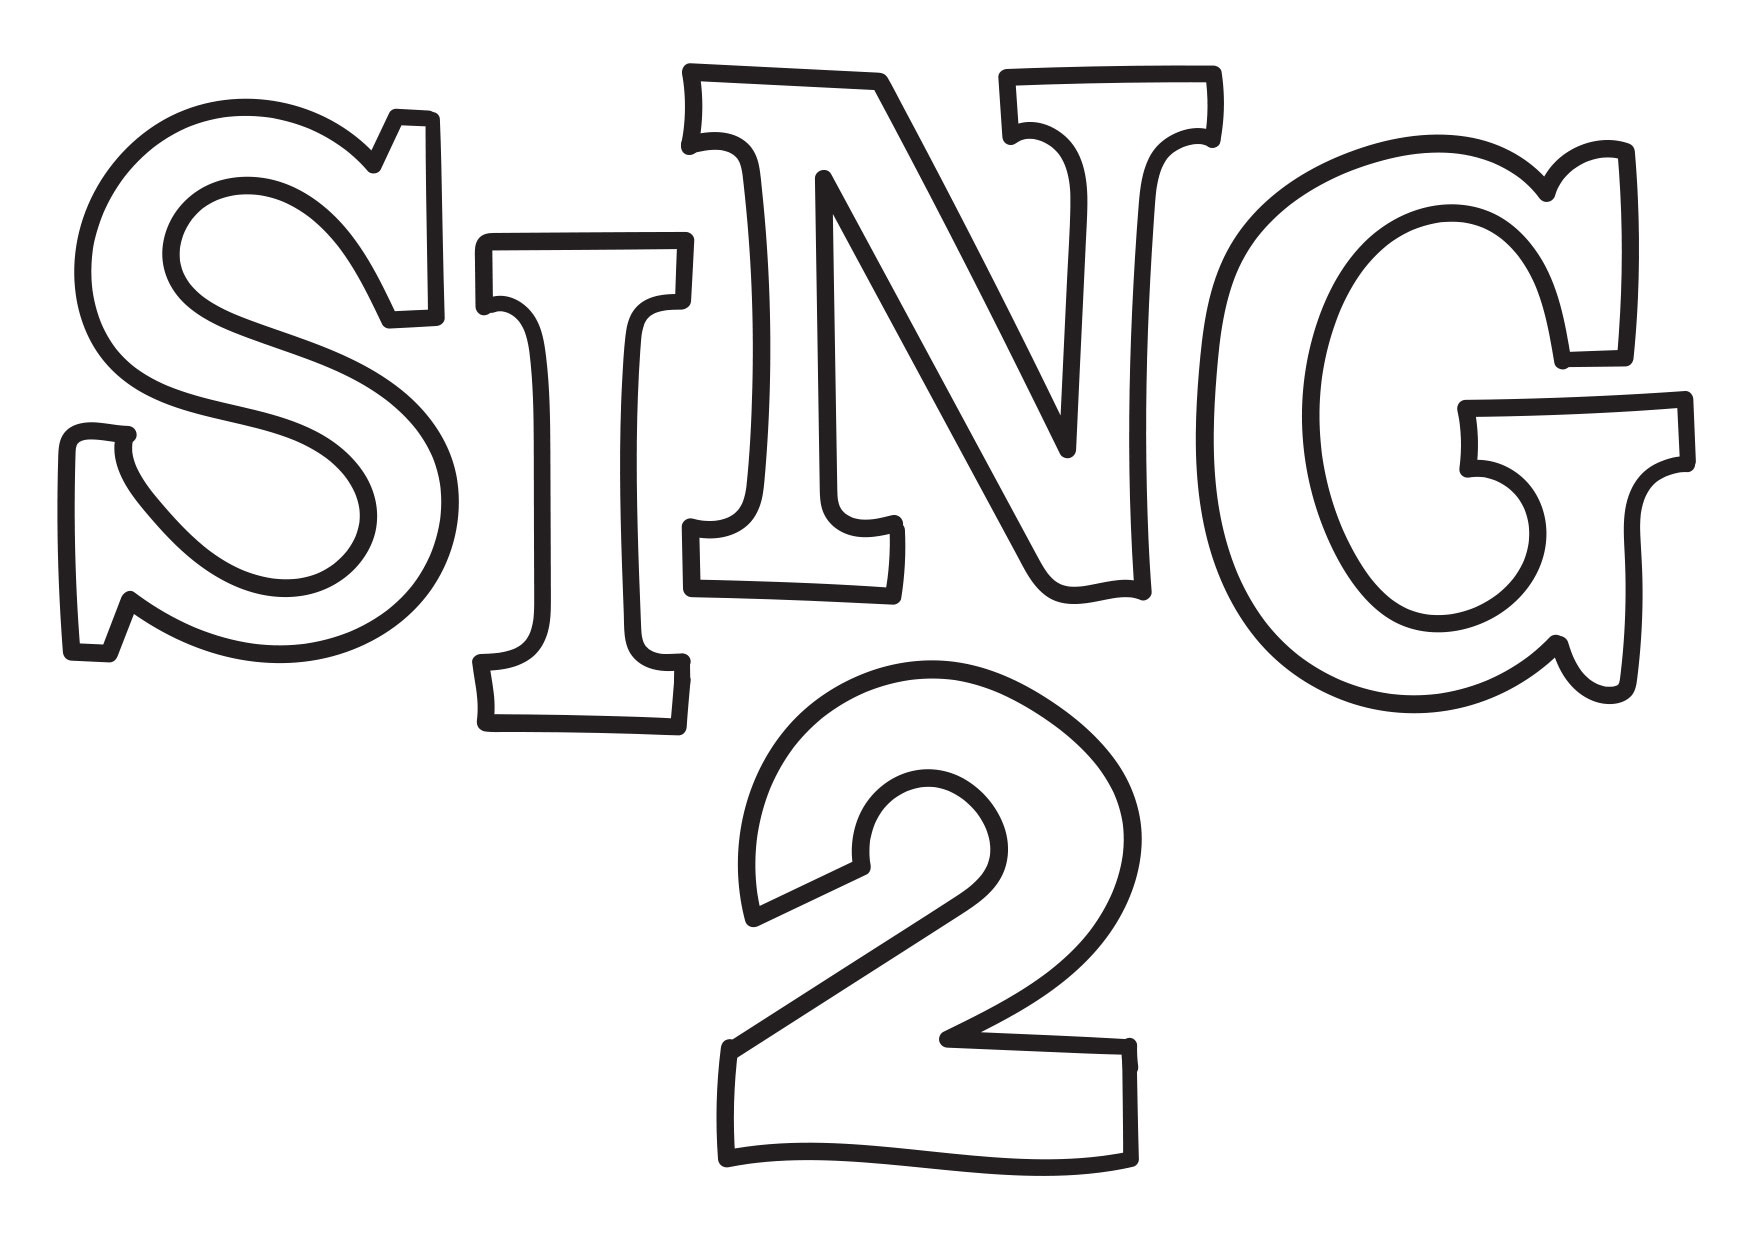 Sing 2 logo coloring page